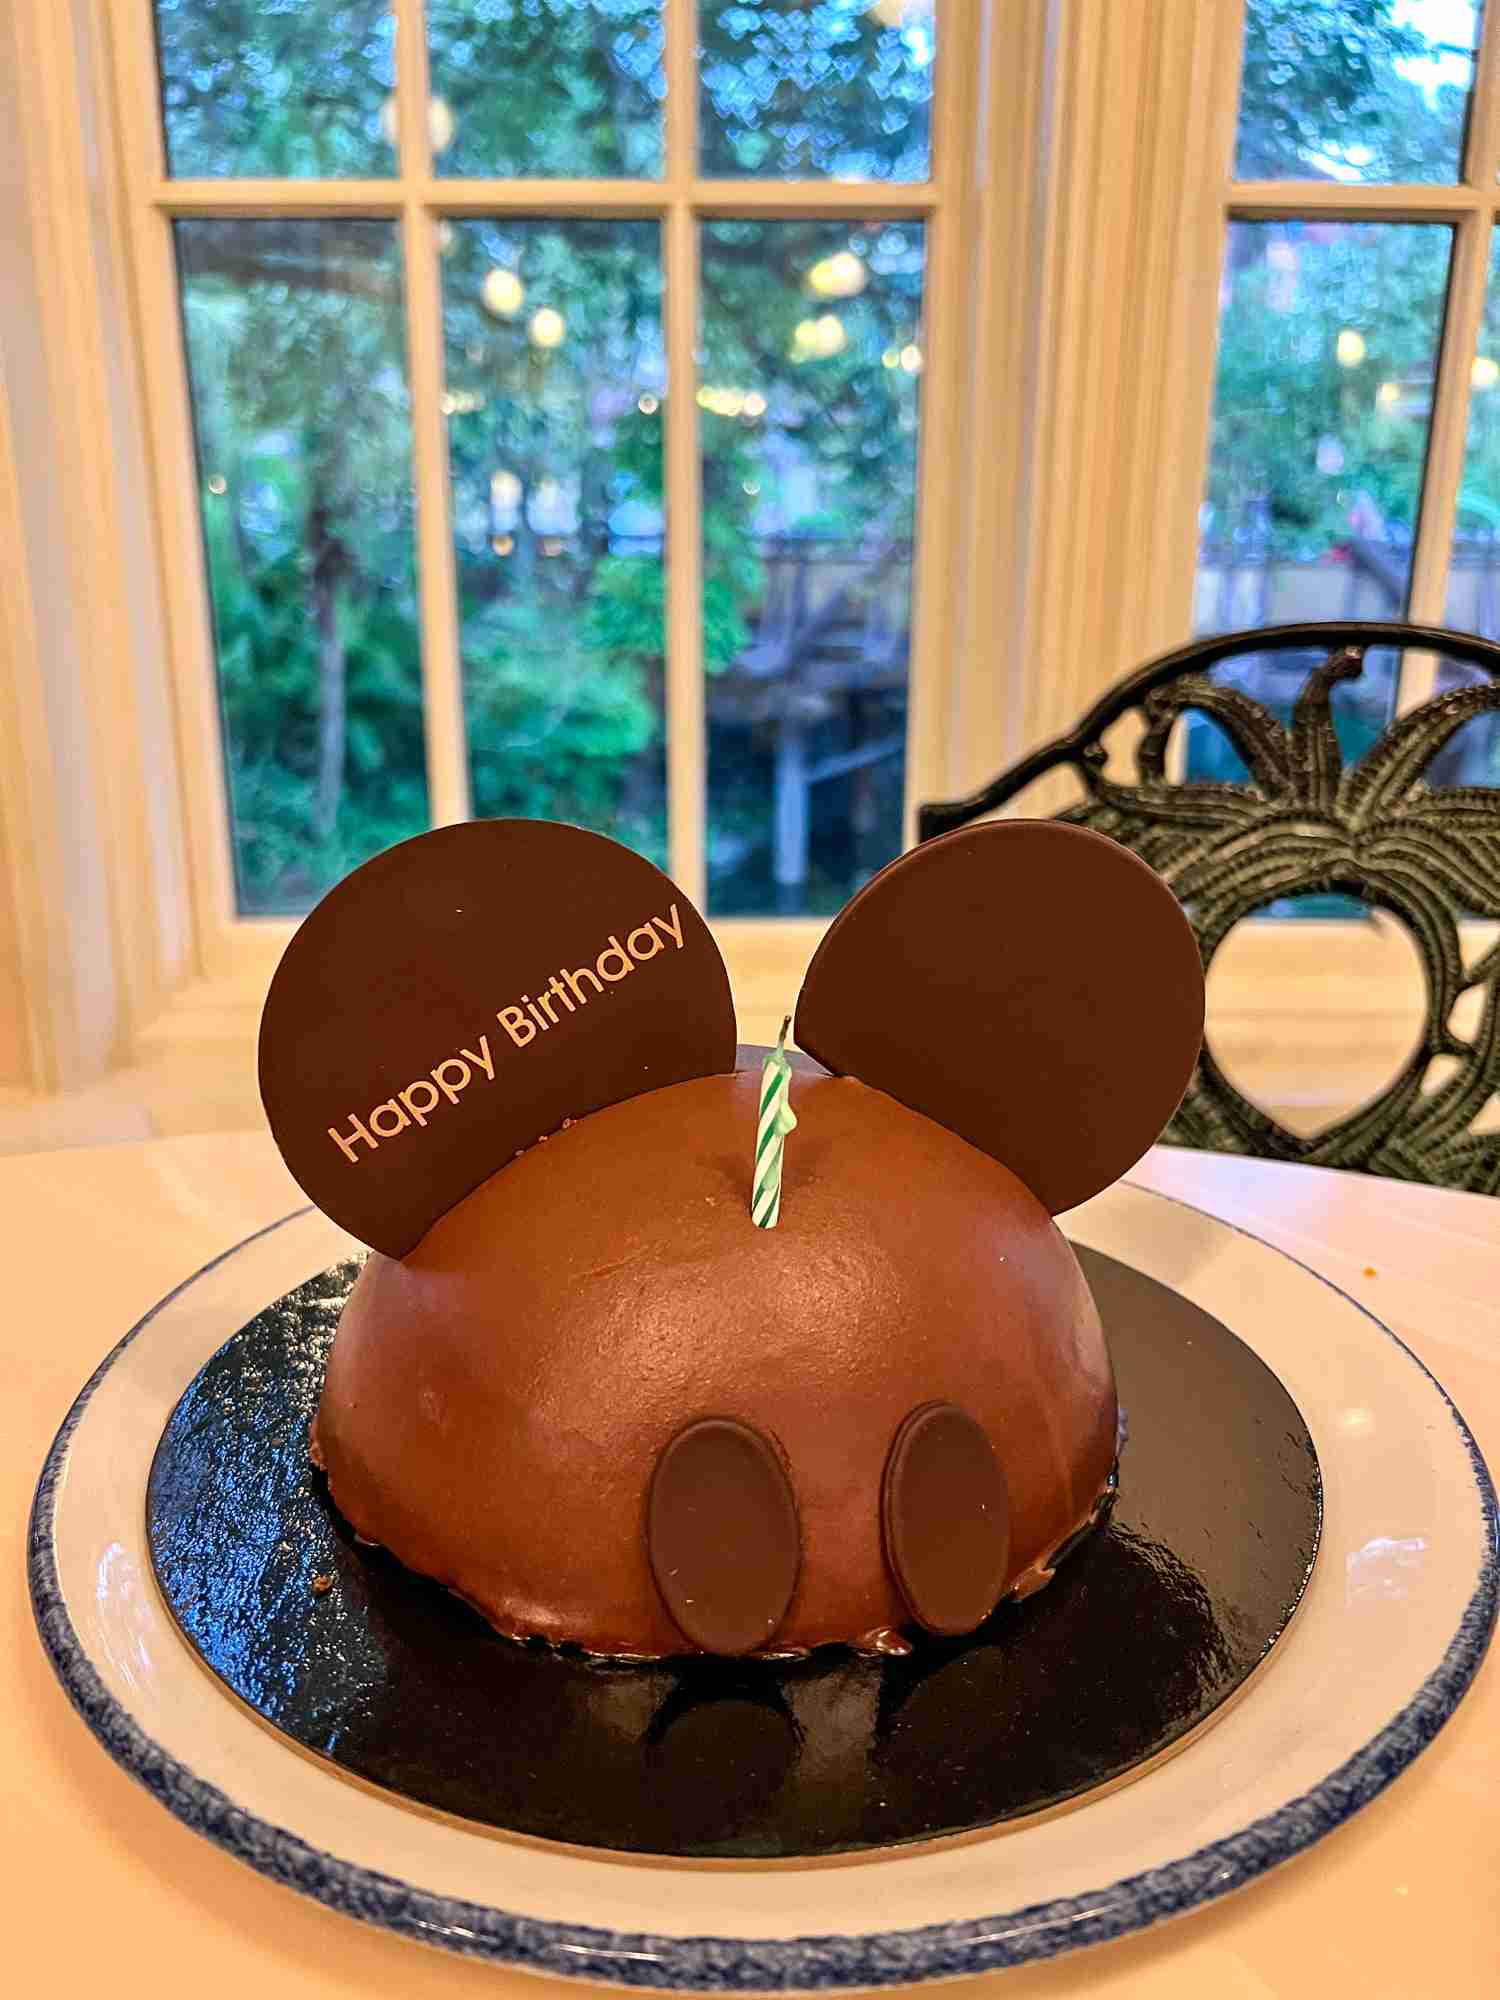 disney world mickey celebration birthday cake